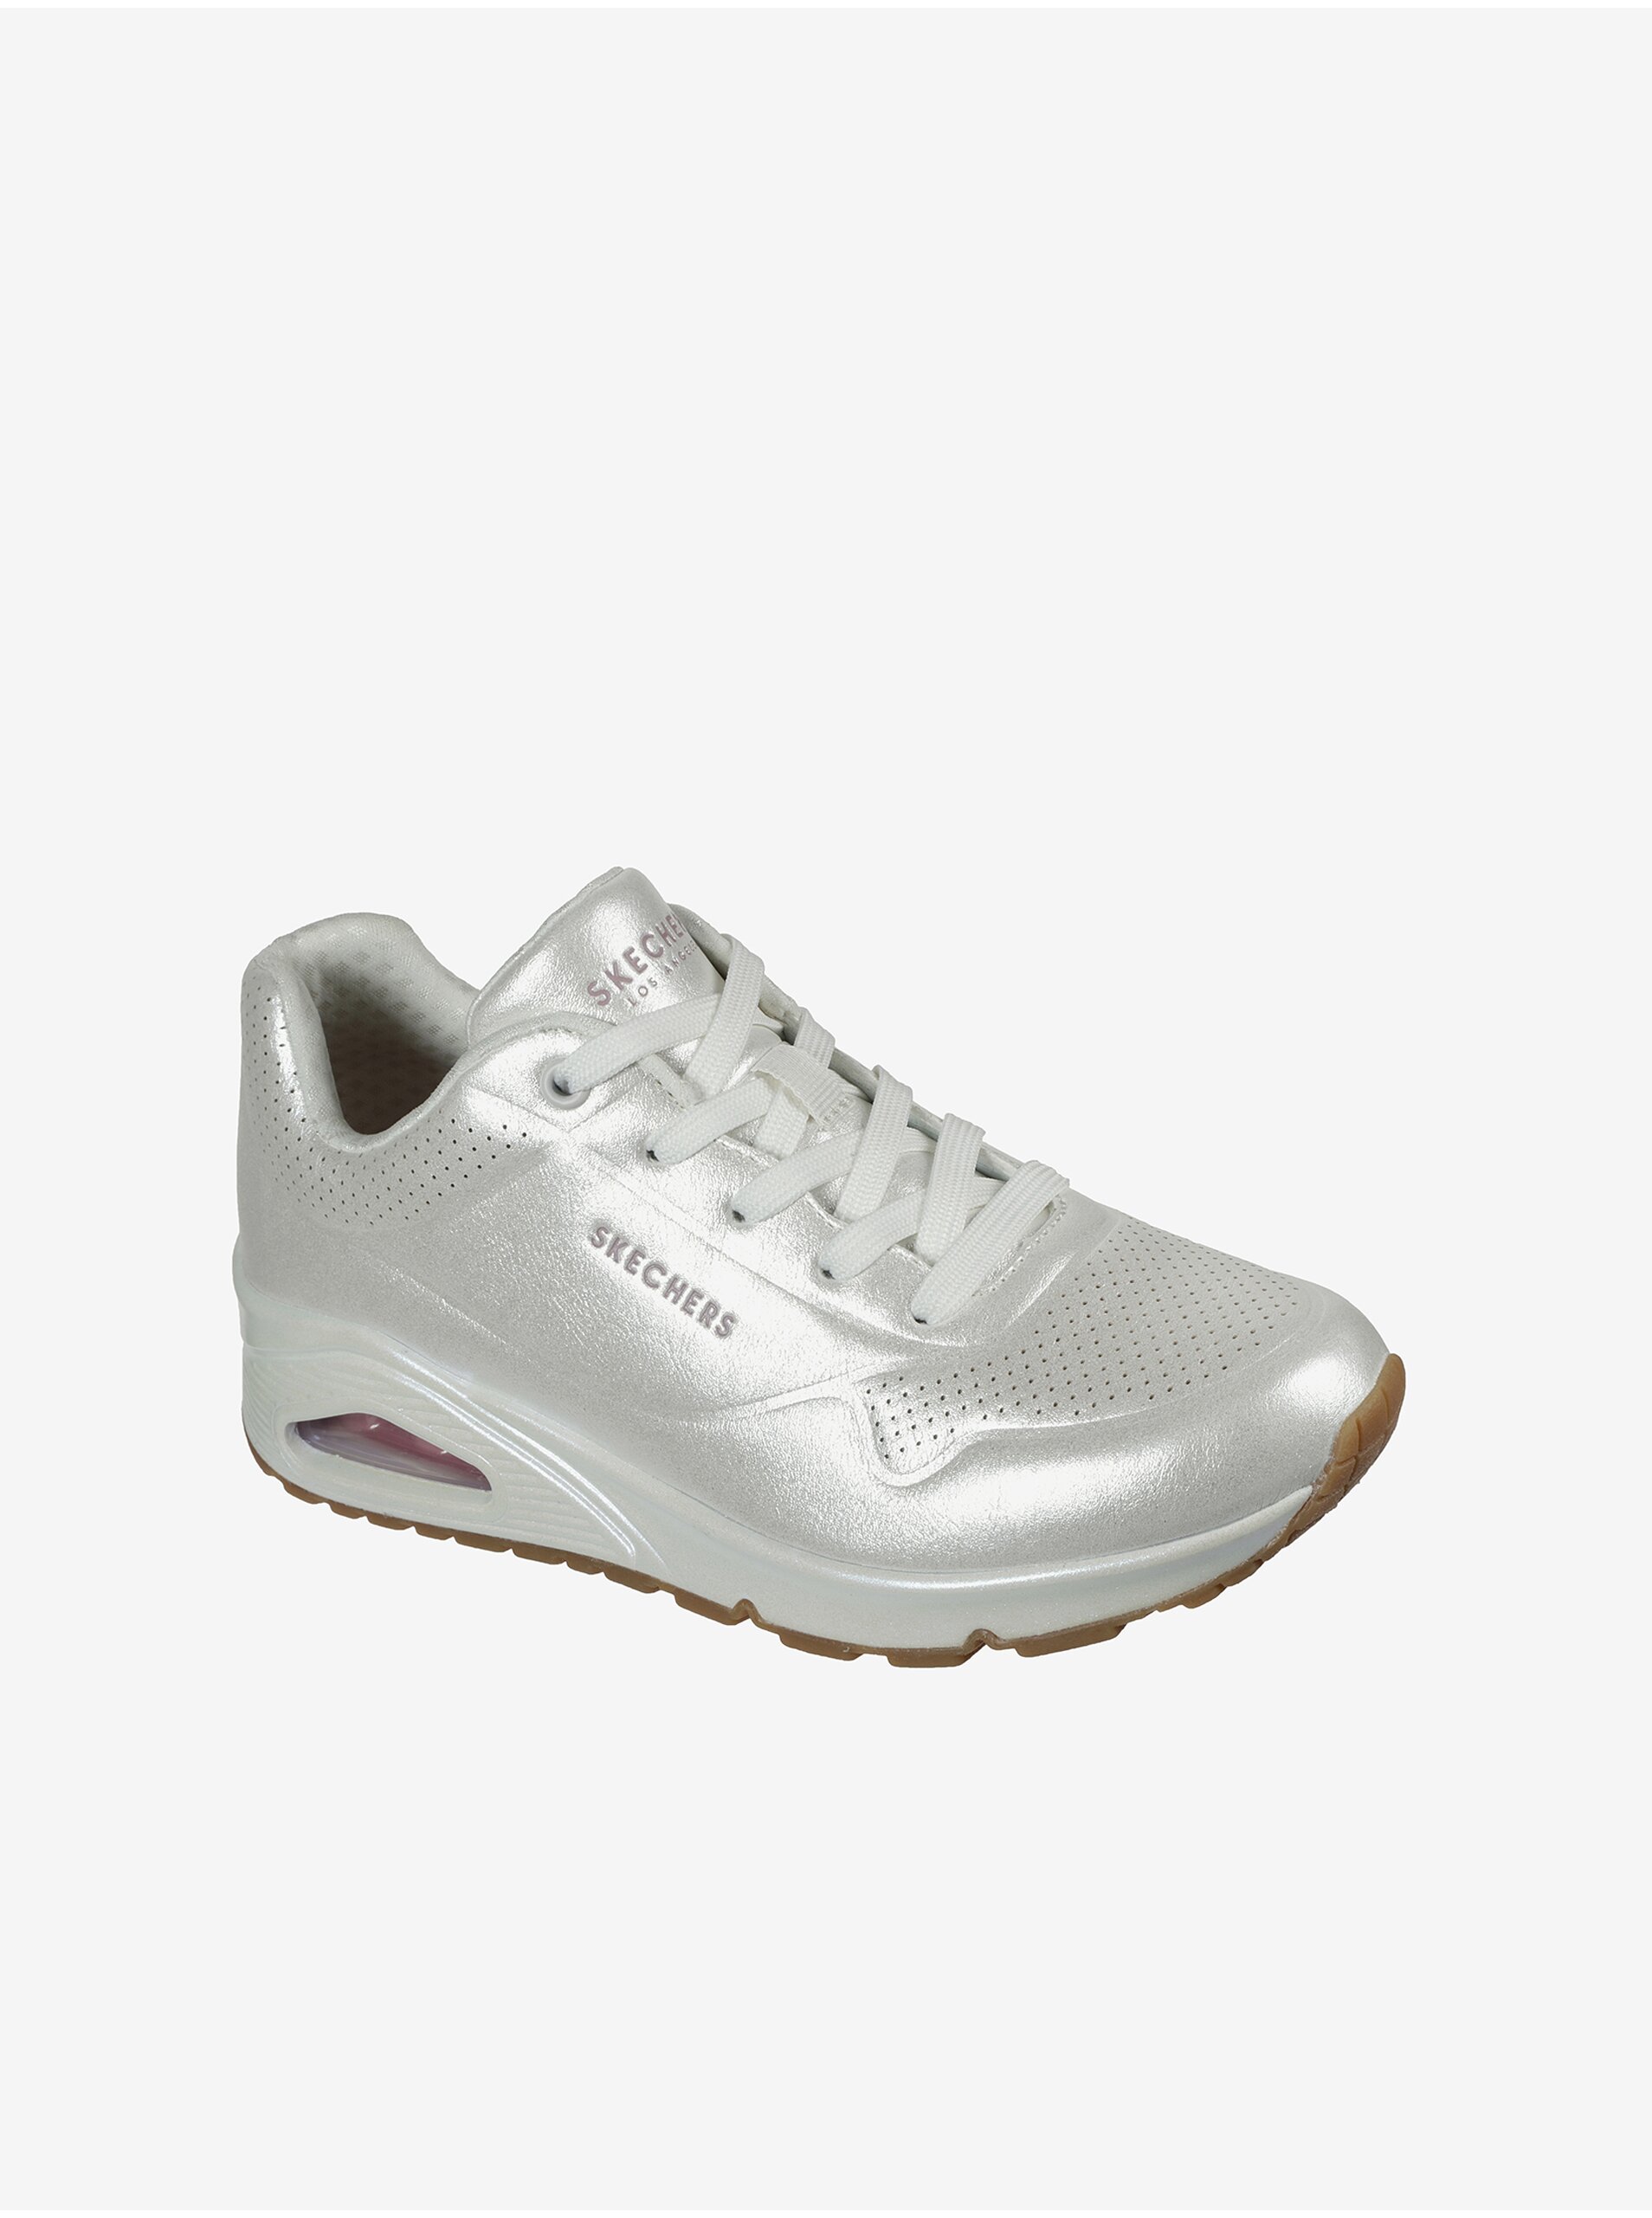 E-shop Biele dámske tenisky Skechers Uno - Pearl Queen